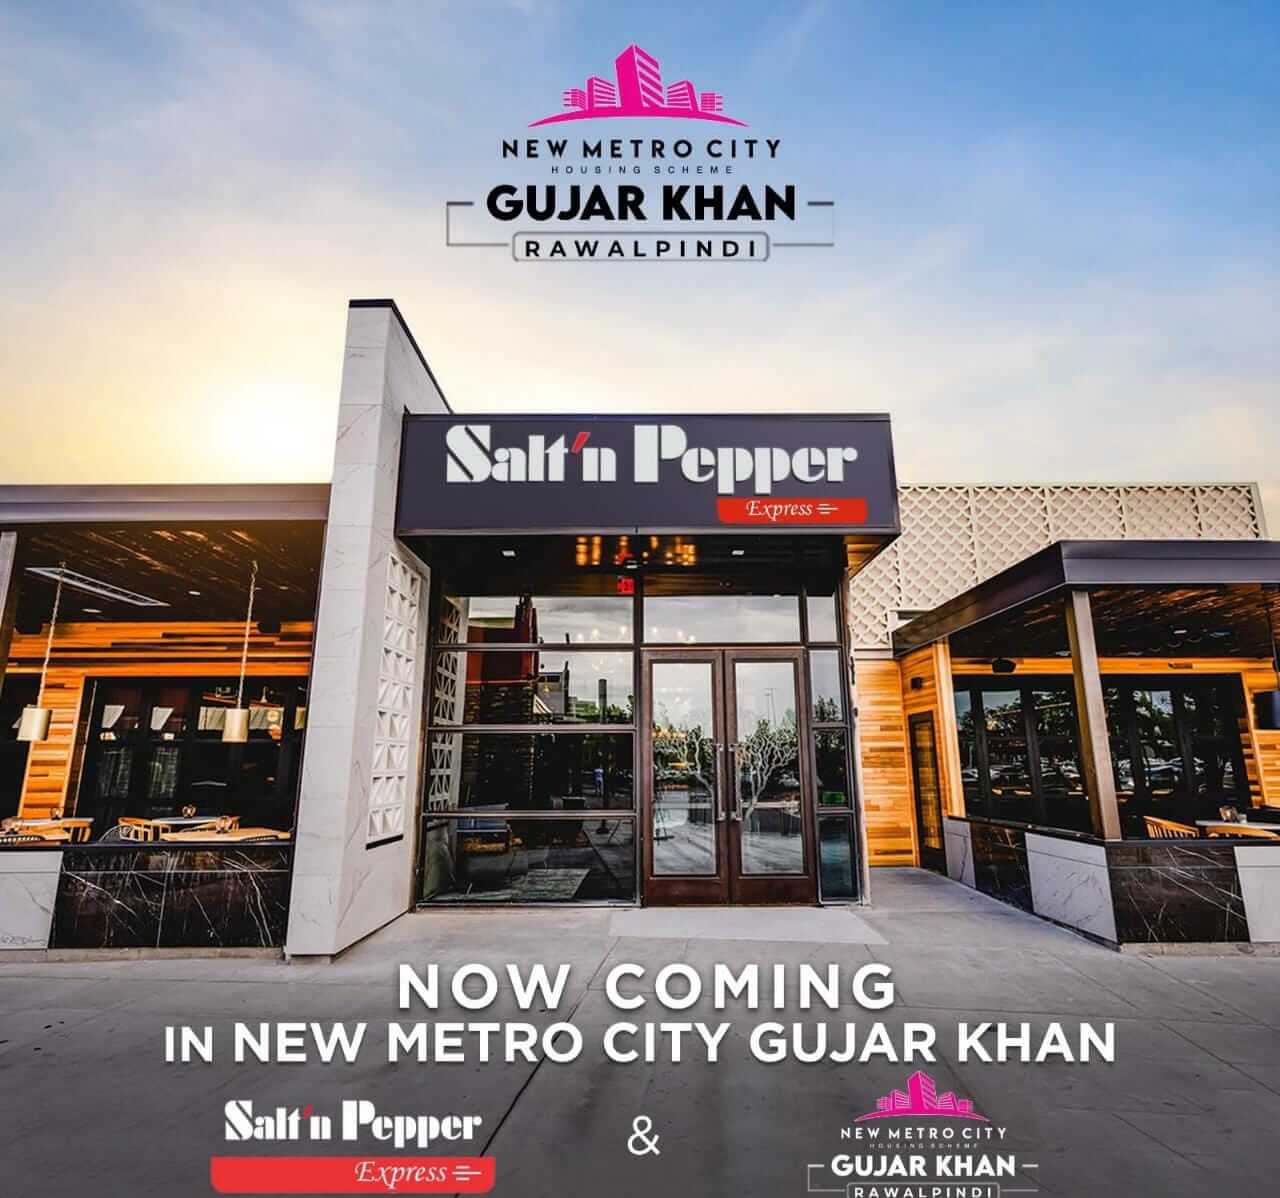 Salt n Pepper In New Metro City Gujar Khan